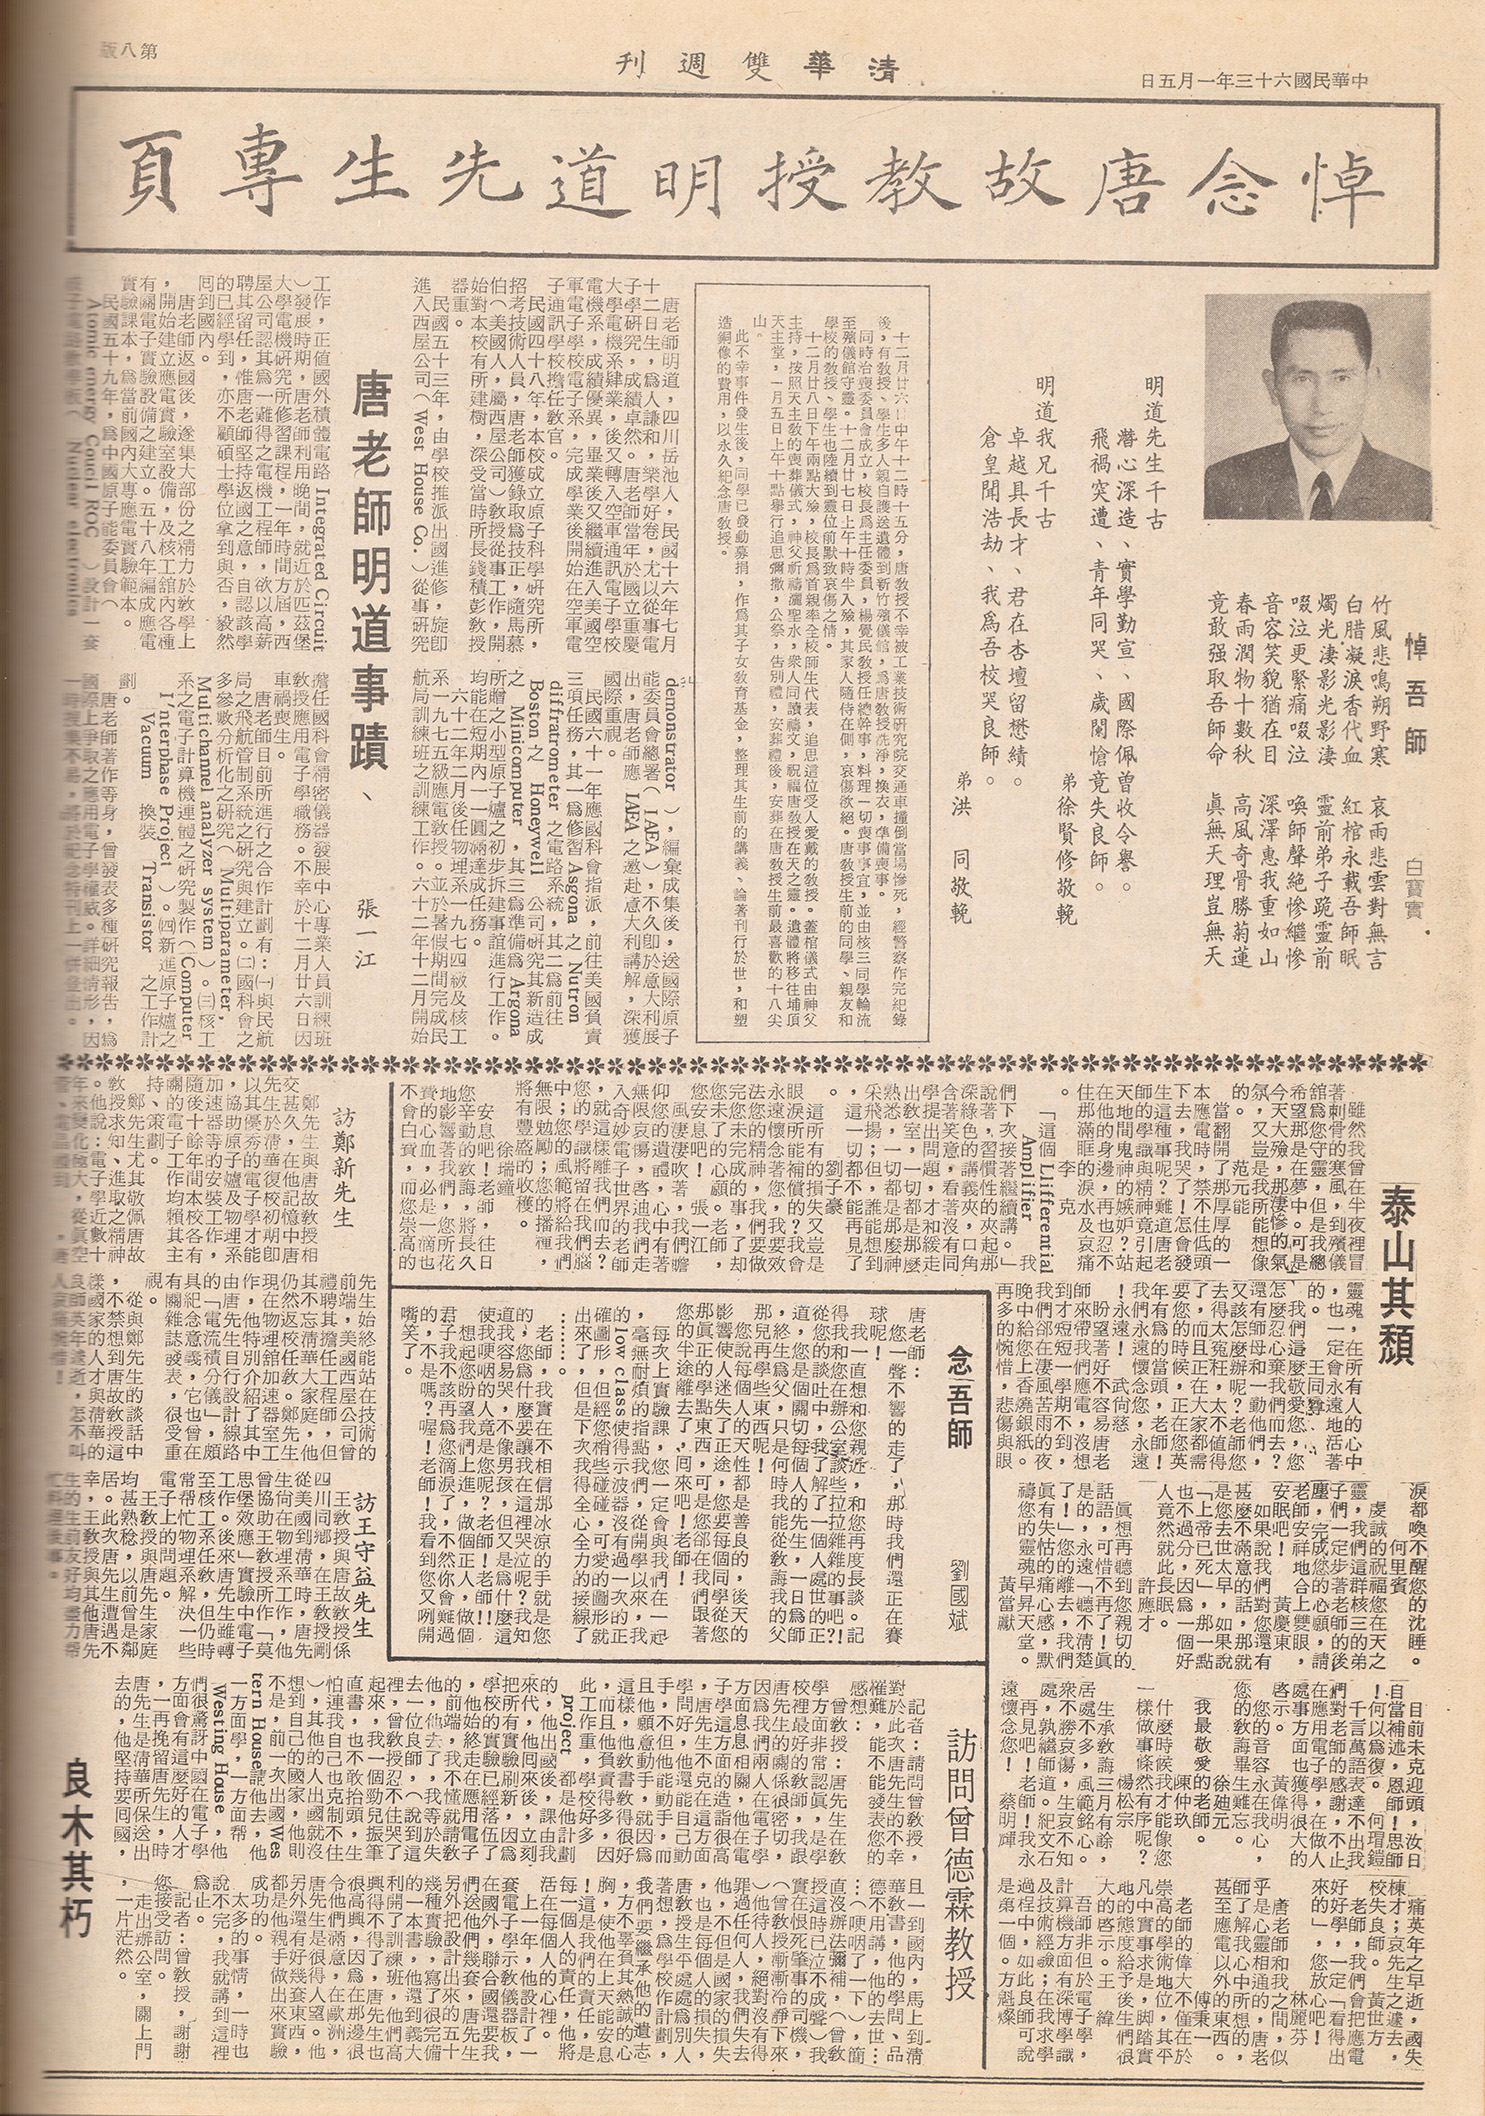 《清華雙週刊》新99期悼念唐故教授明道先生專頁。